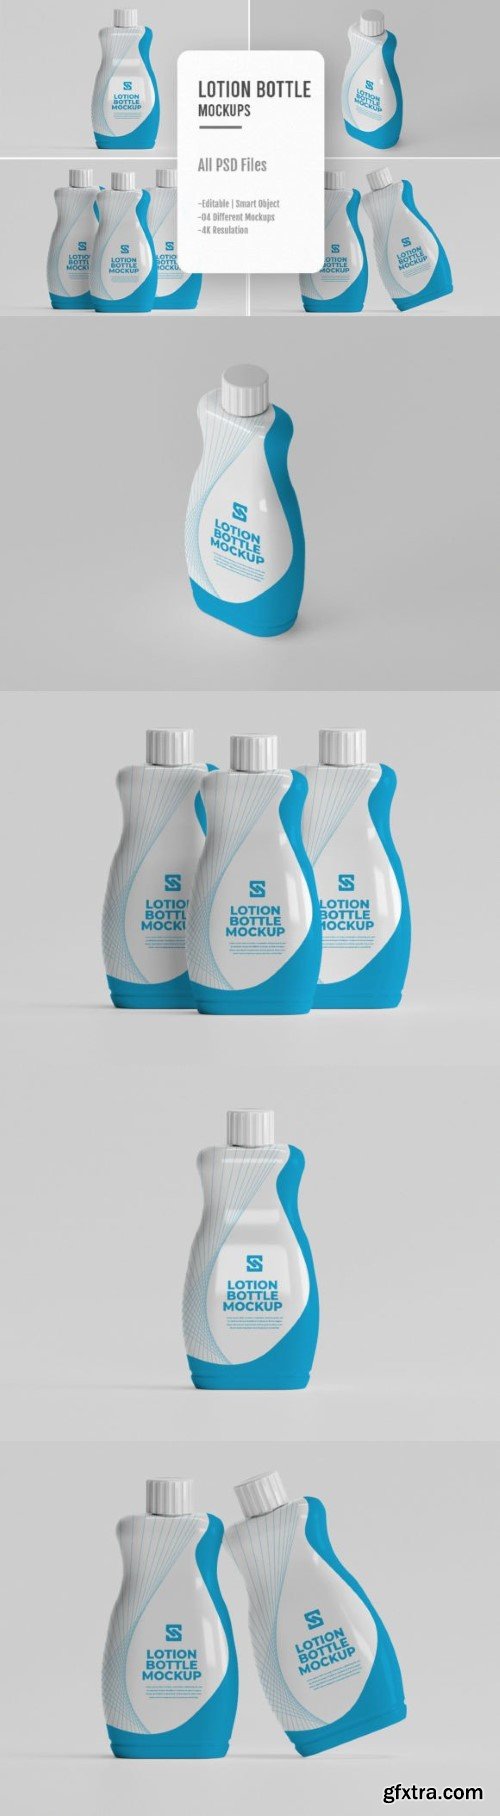 04 PSD Lotion Bottle Branding Mockups